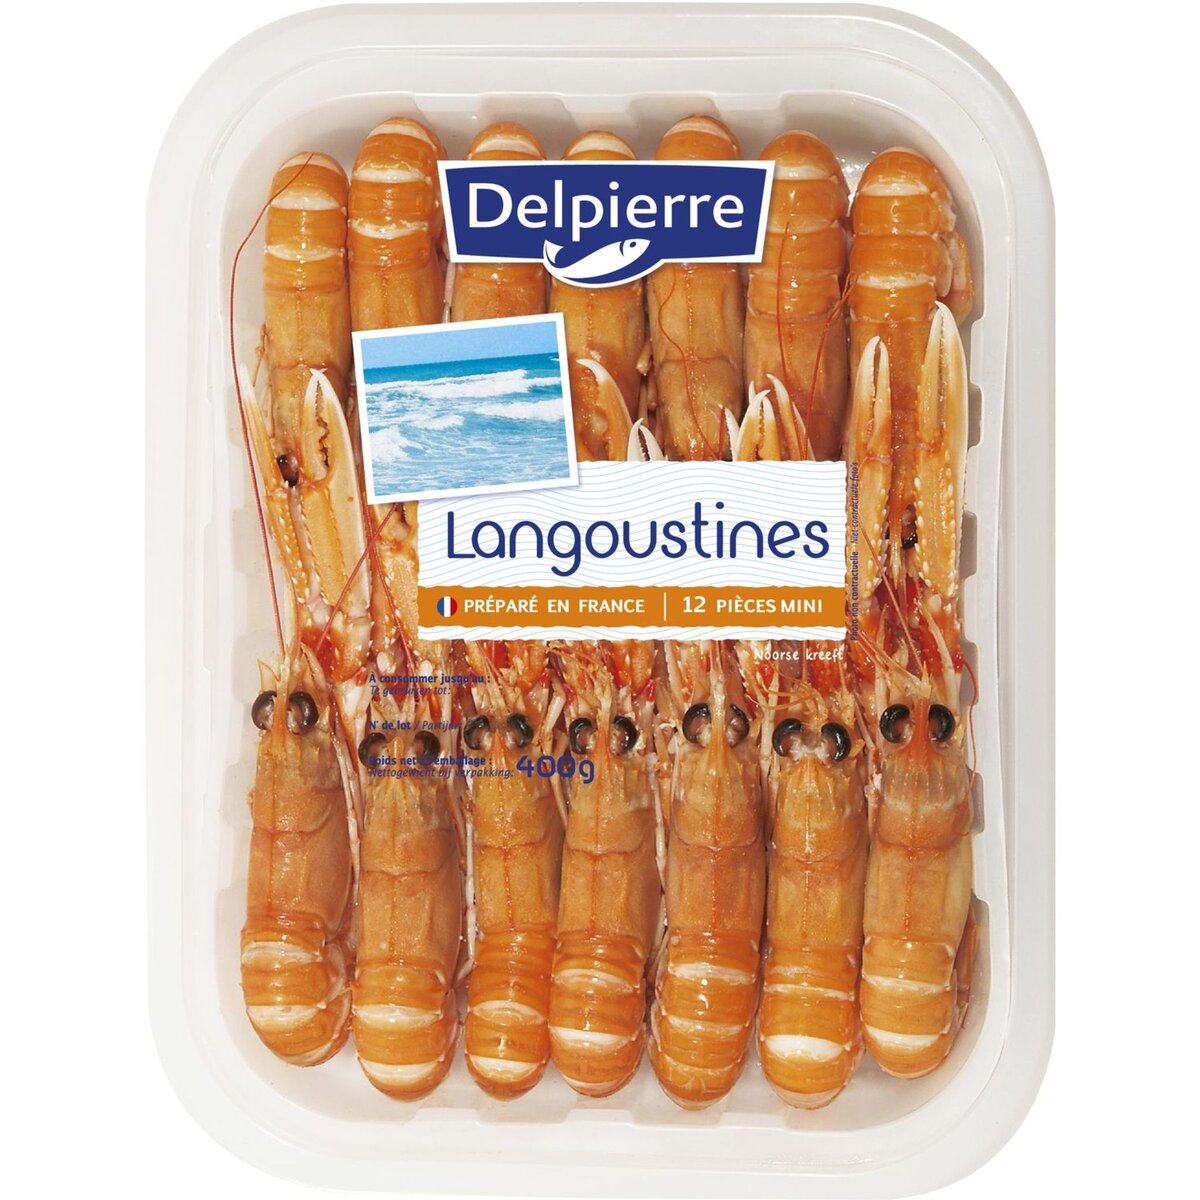 DELPIERRE Delpierre langoustines barquette 400g